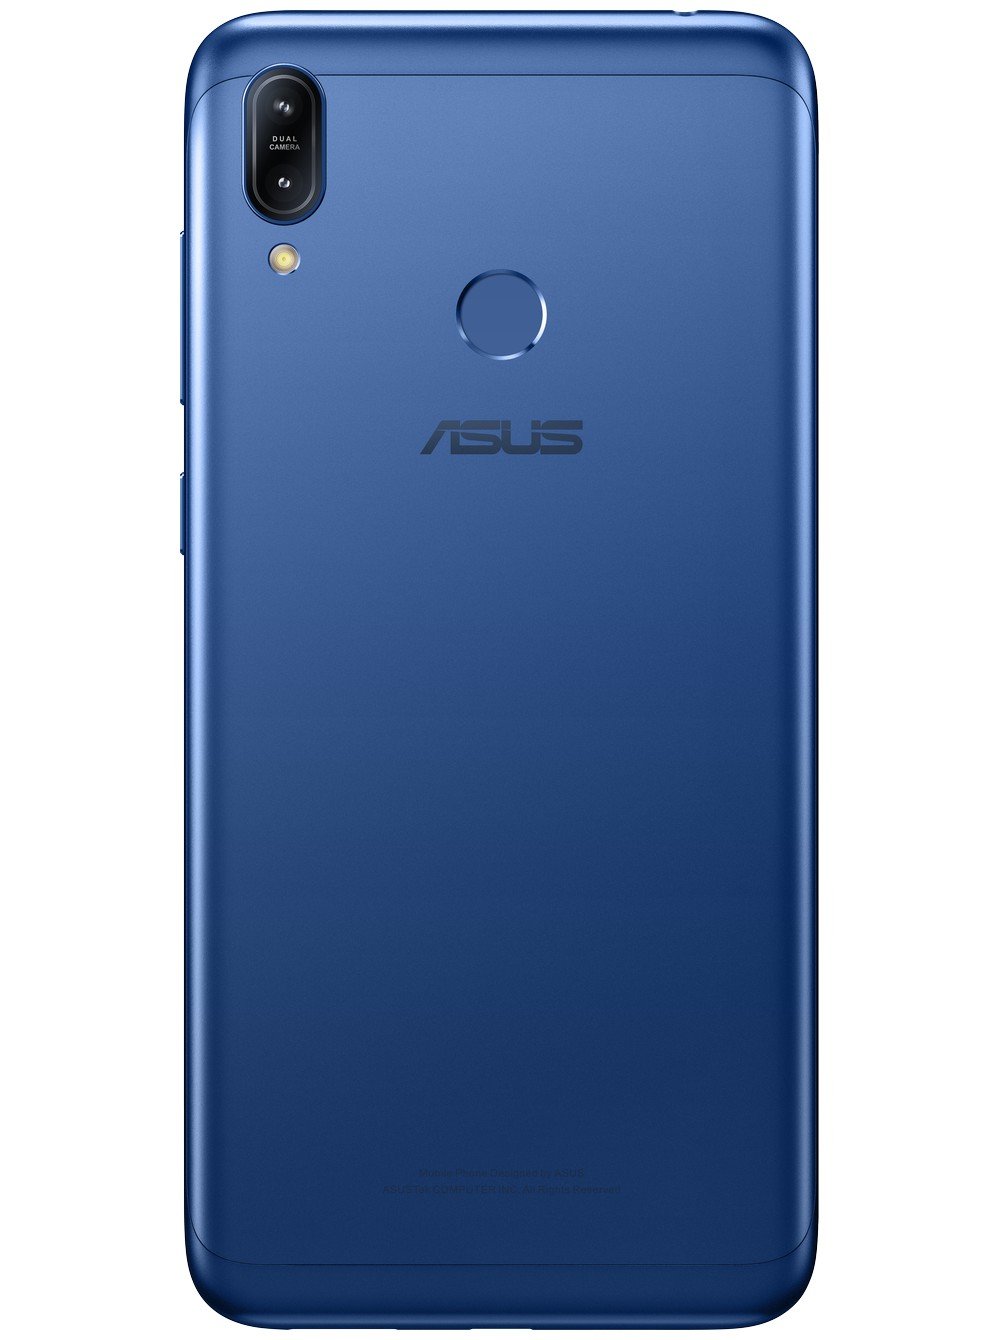 Asus Zenfone Max (M2) ZB633KL características y especificaciones, analisis,  opiniones - PhonesData